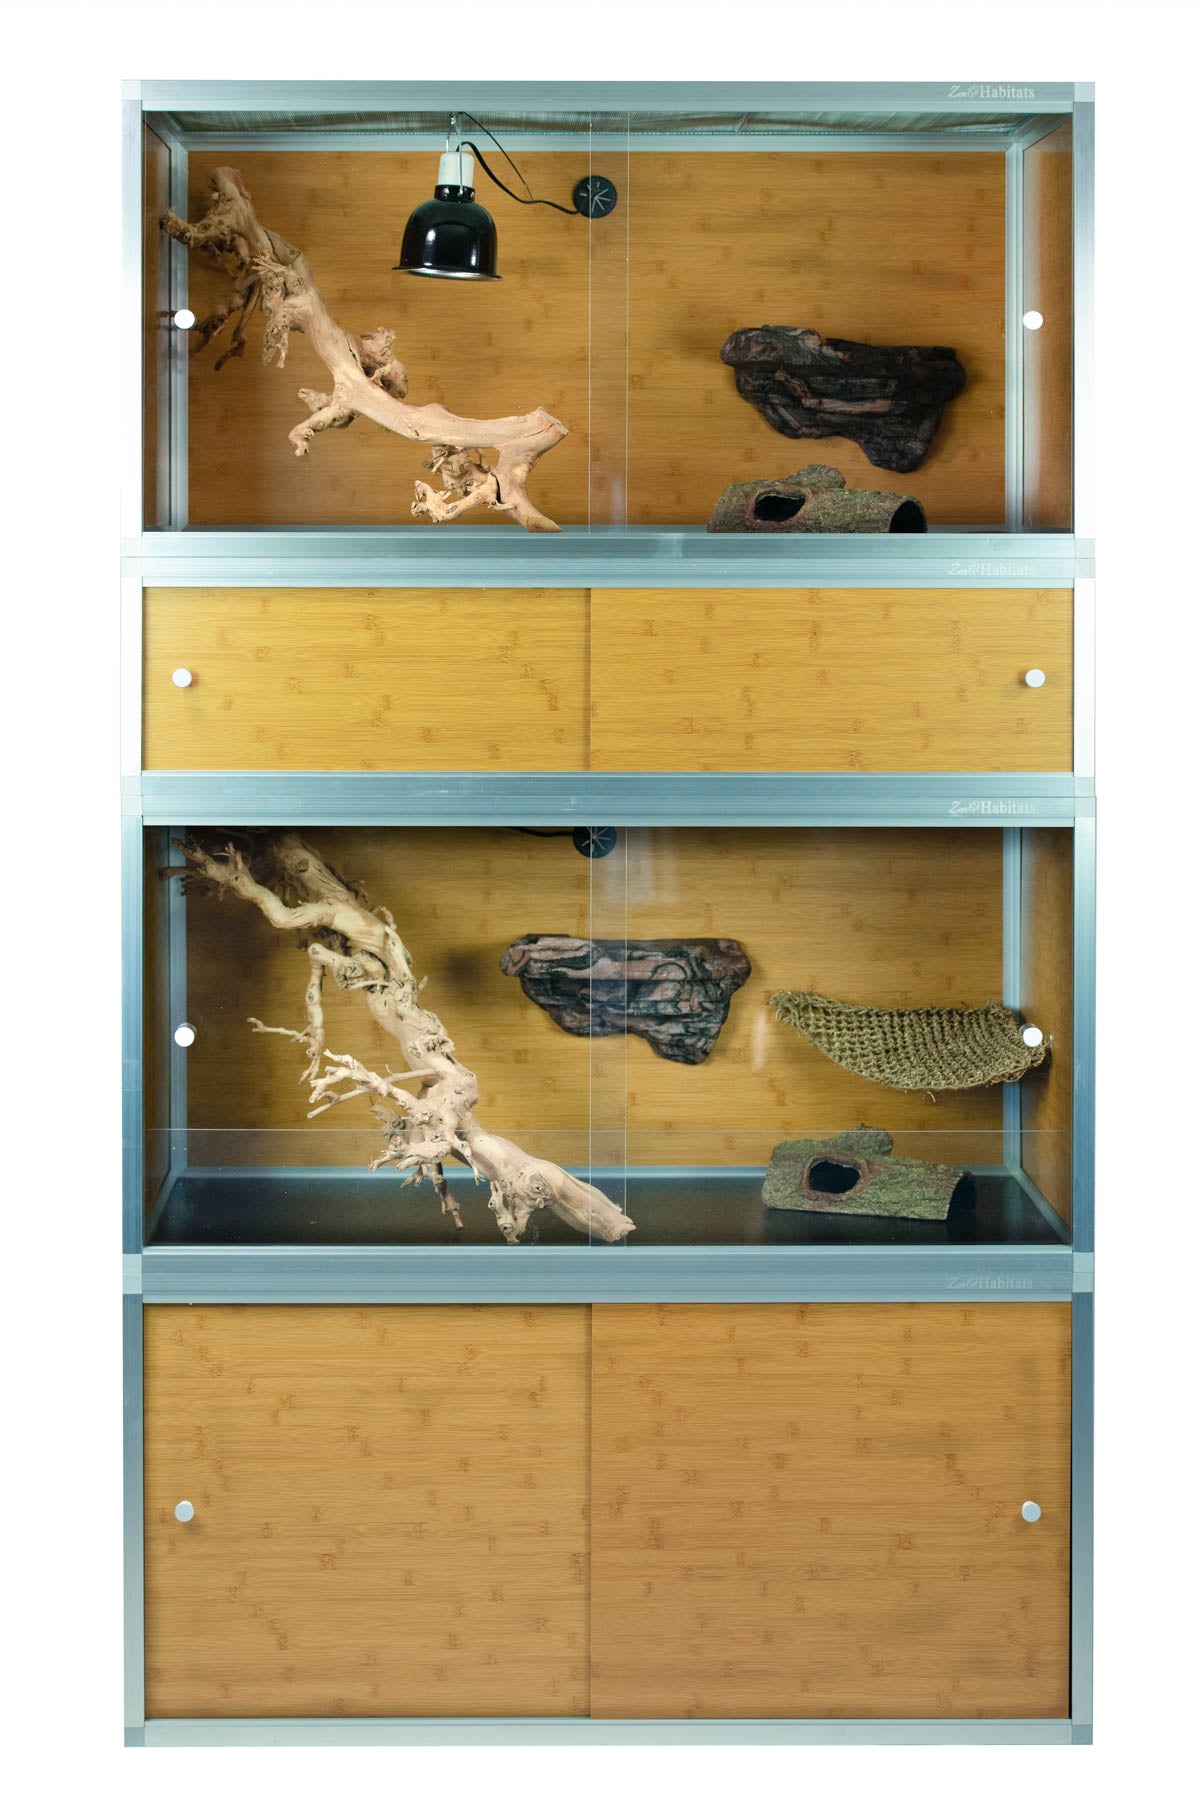 4'x2'x2' Wood Panel Reptile Enclosure by Zen Habitats - Zen Habitats Canada